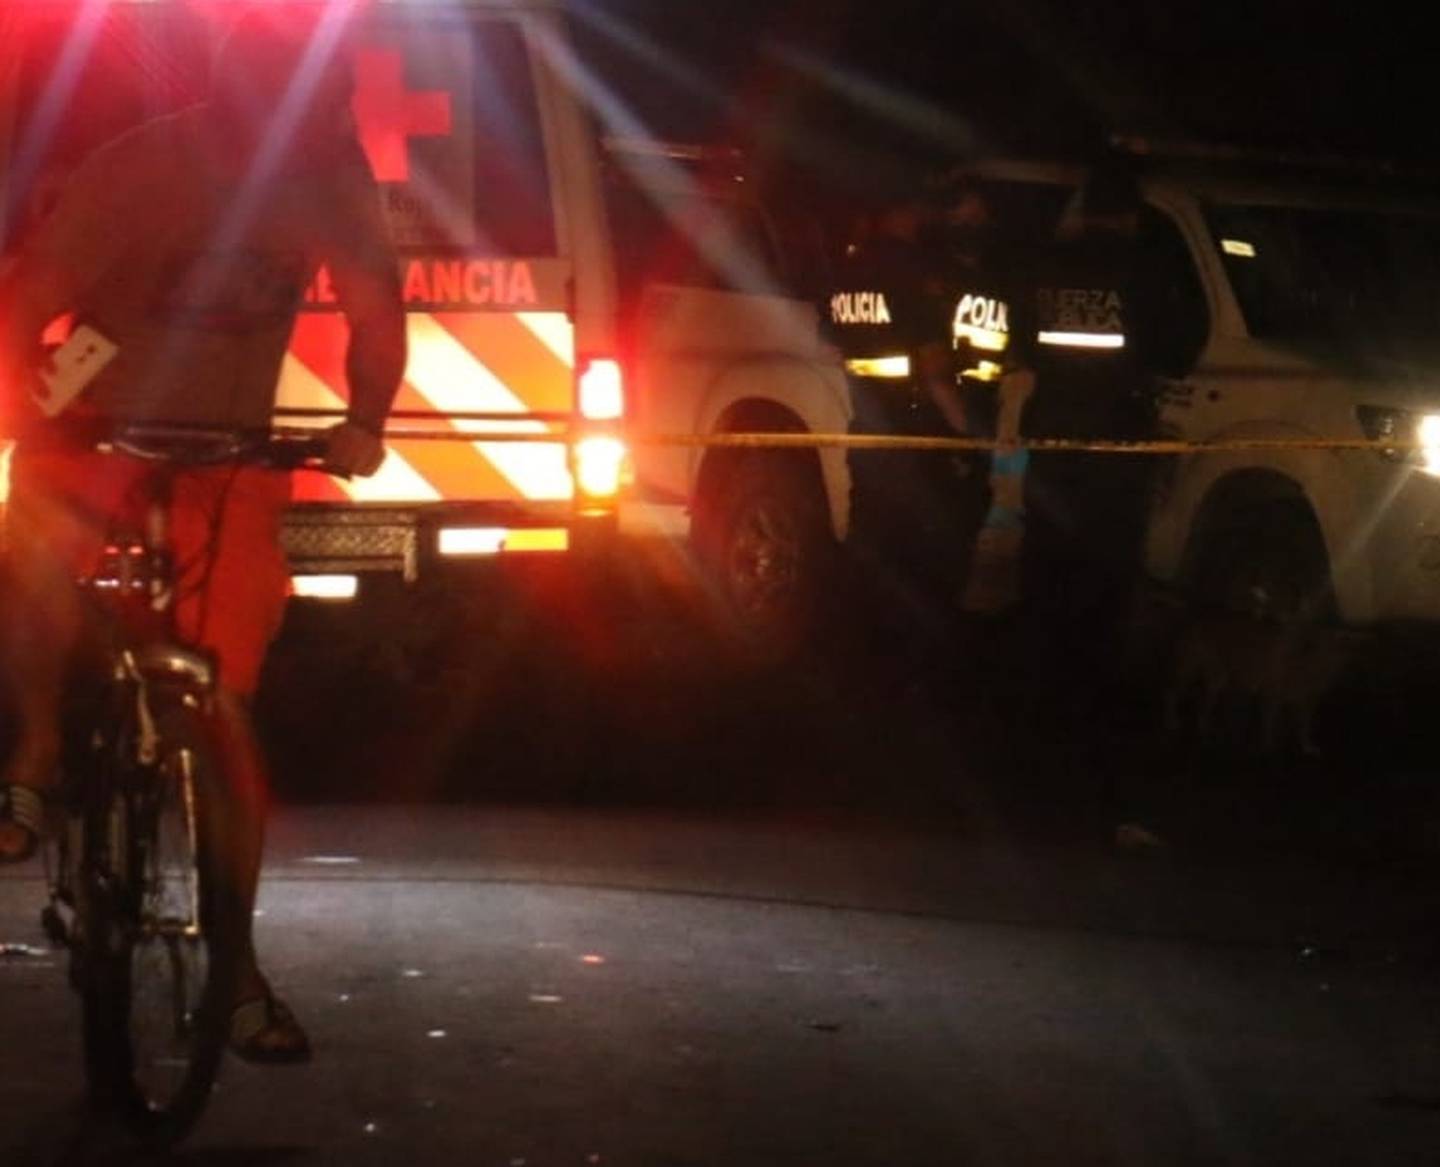 Policías y cruzrojistas de Cariari fueron movilizados la noche de este lunes a Astúa -Pirie, donde un tiroteo dejó un muerto y dos heiridos. Foto: Reiner Montero.